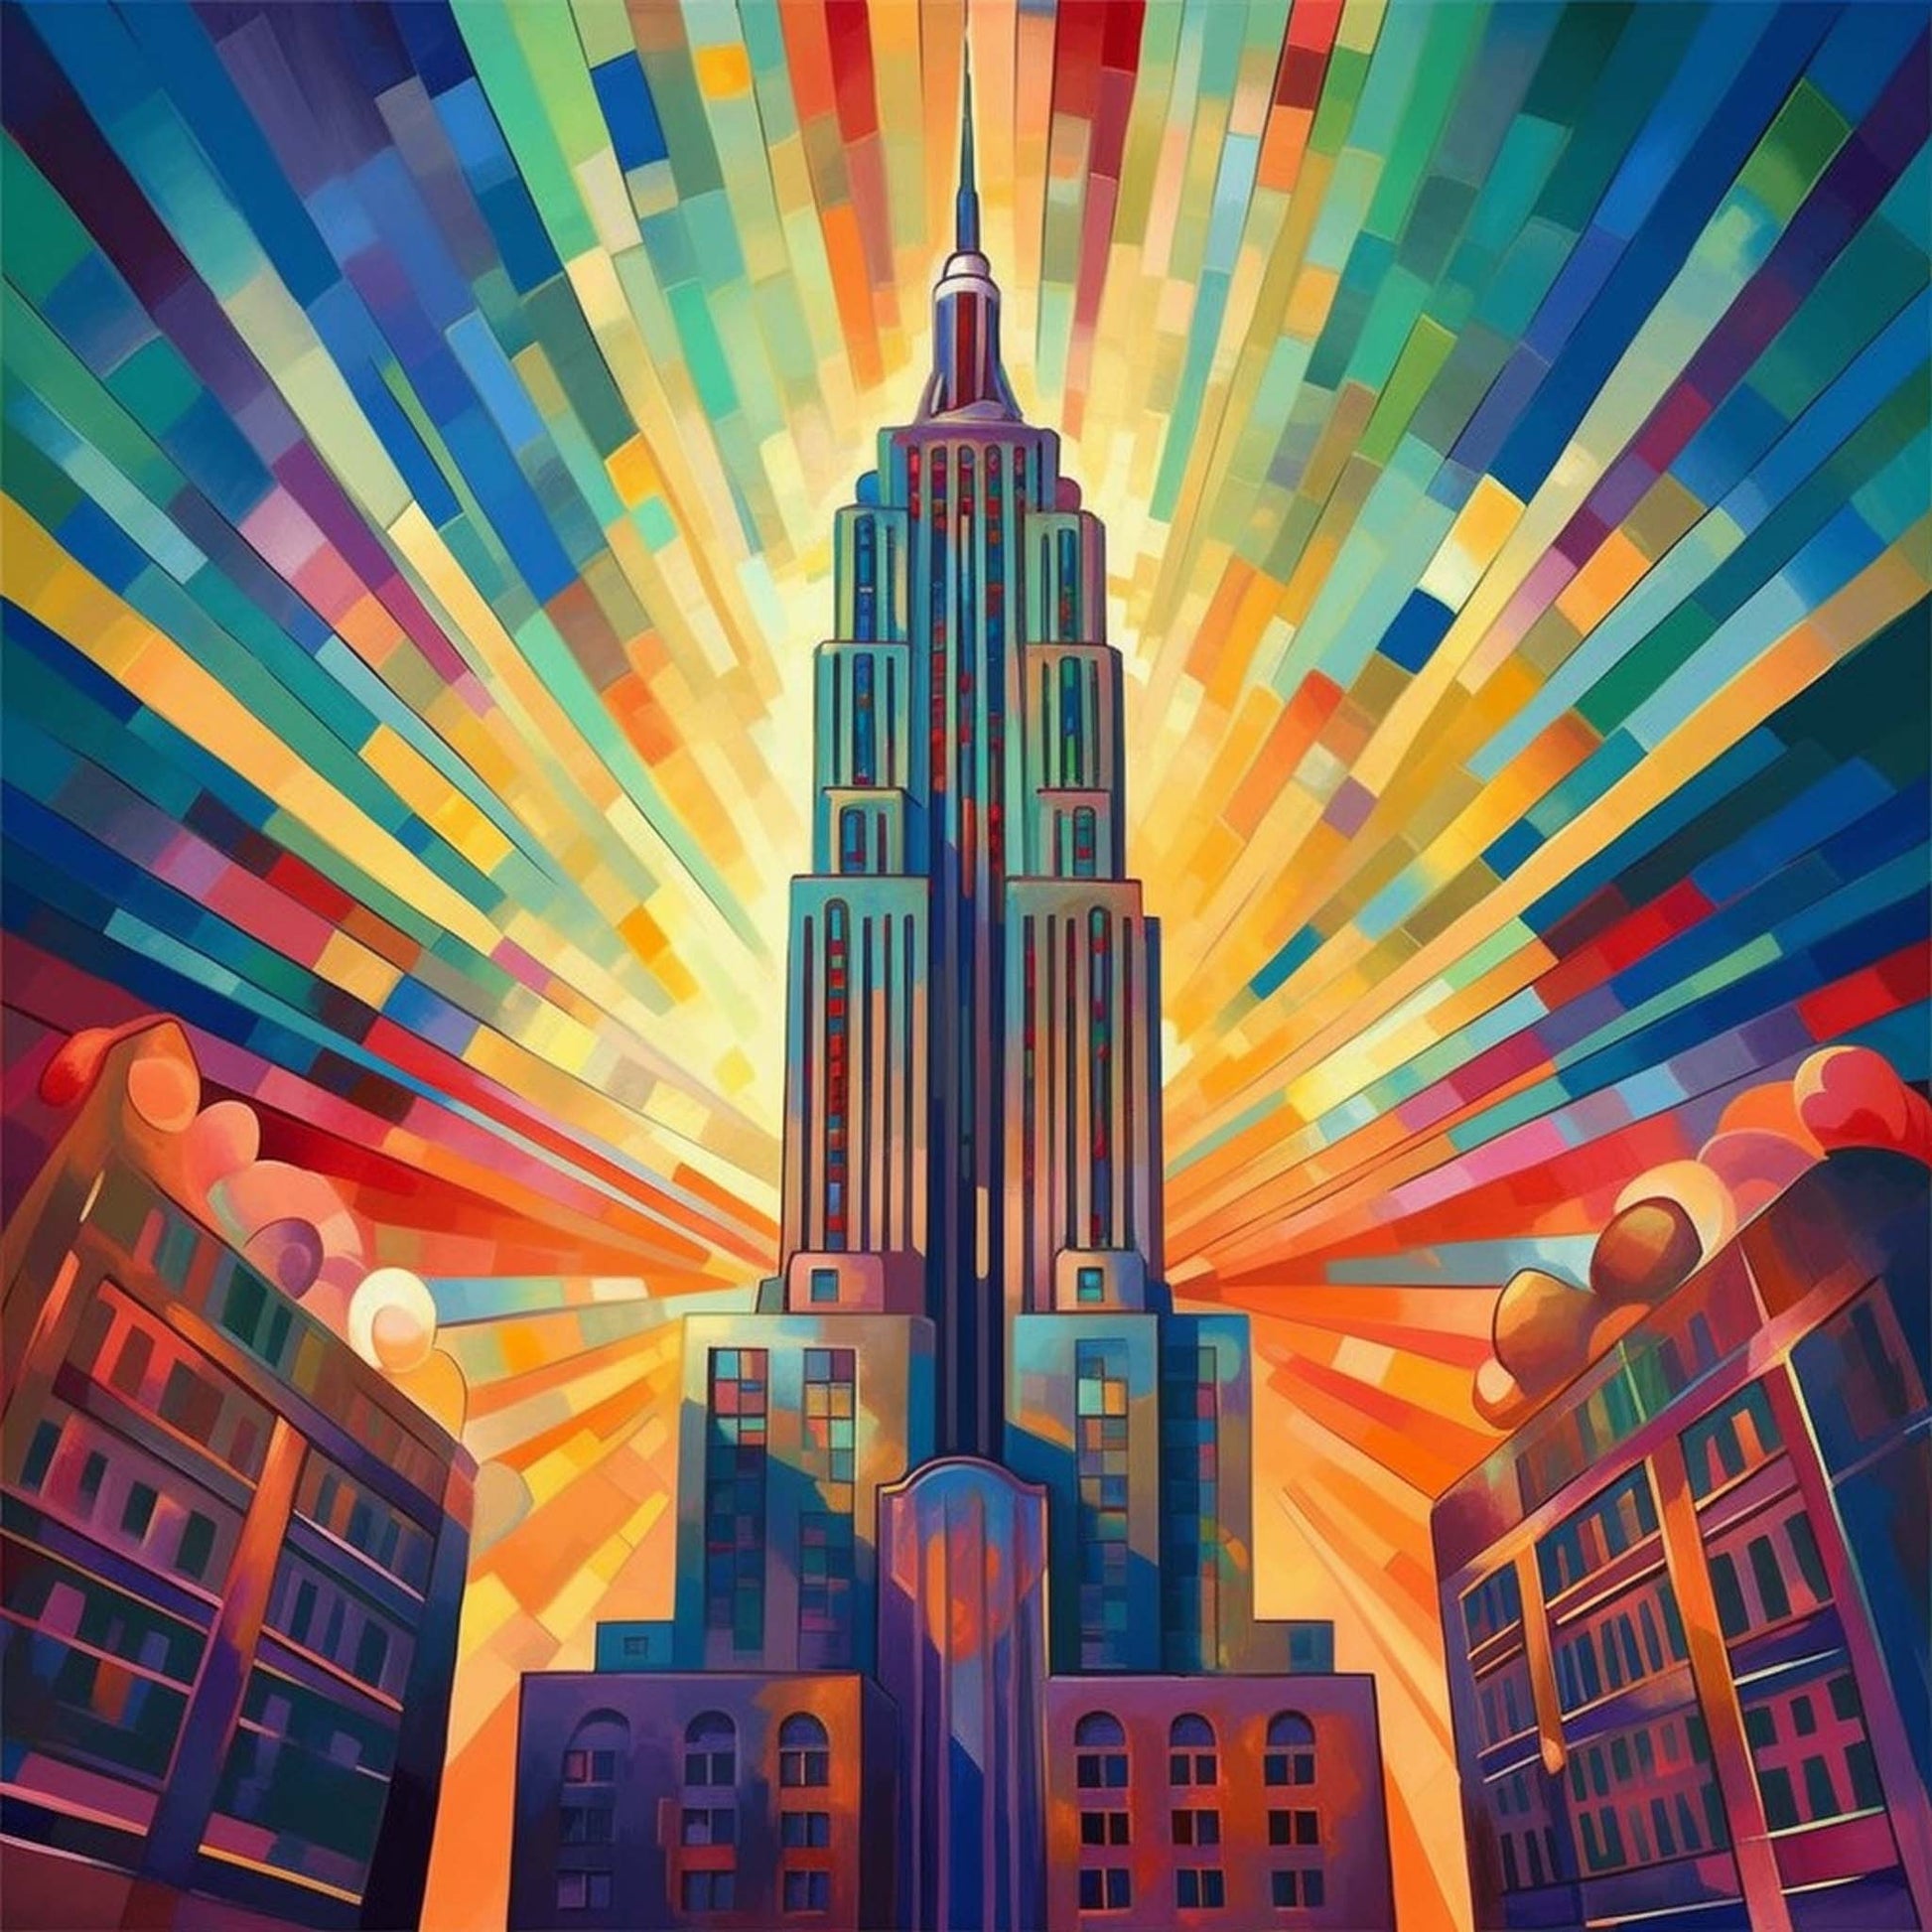 Urbanisto - New York Empire State Building - Wandbild in der Stilrichtung des Futurismus